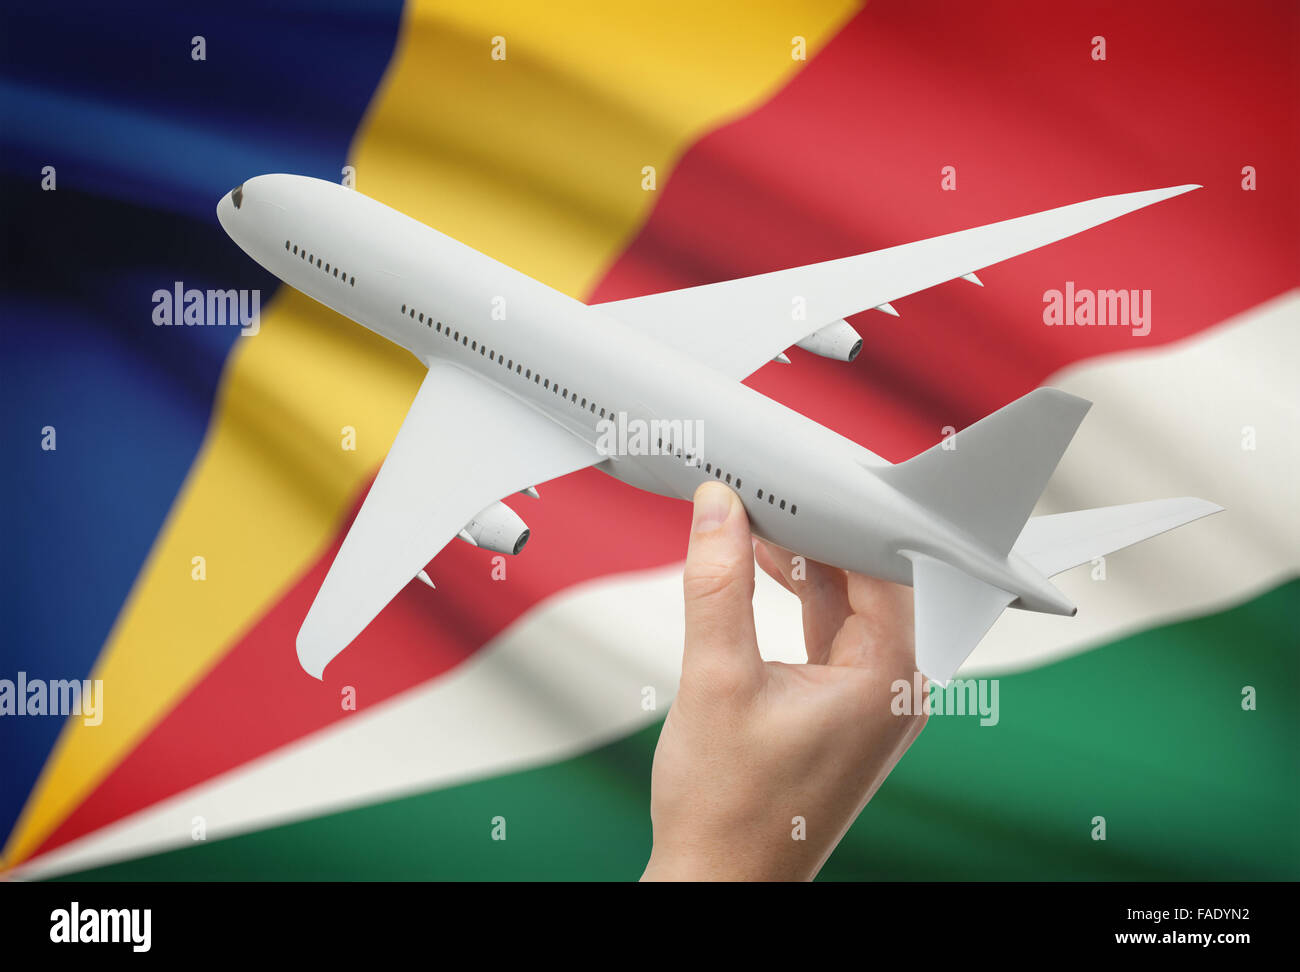 Avion en main avec drapeau national sur l'arrière-plan - Seychelles Banque D'Images